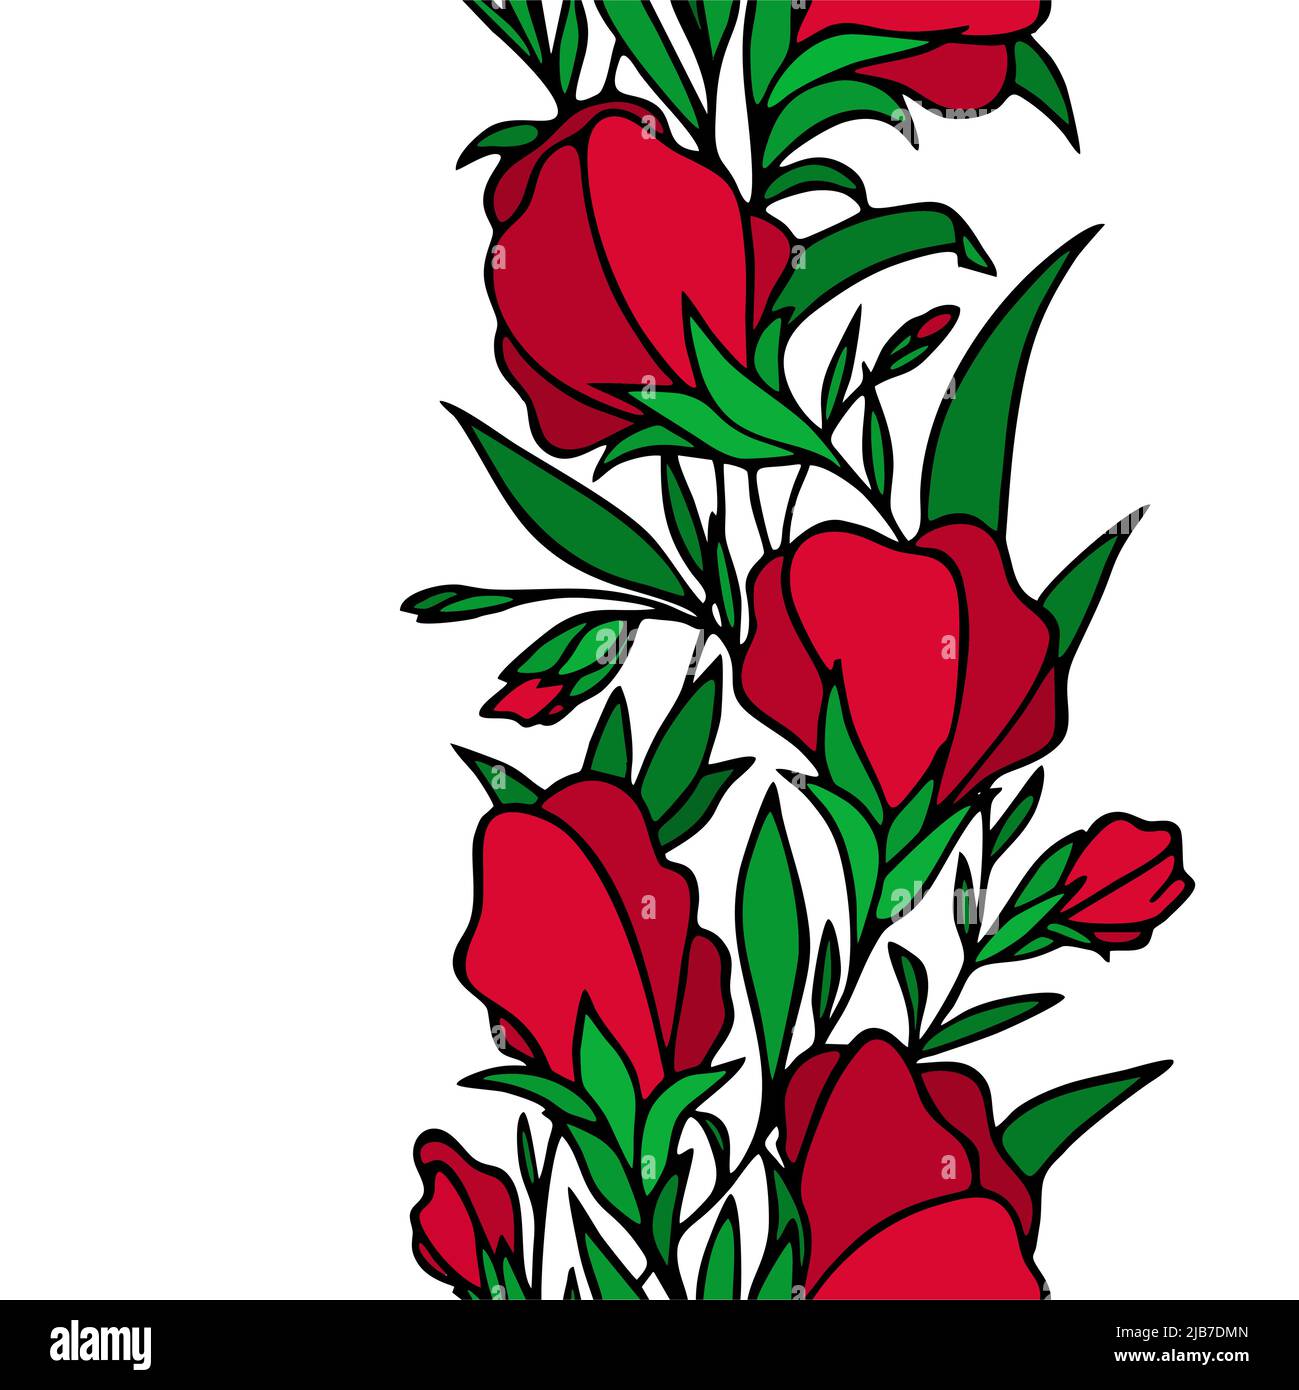 bordure sans couture florale, fleurs rouges bordure répétitive sur fond blanc avec contour noir, textile, design, art, graphique Illustration de Vecteur